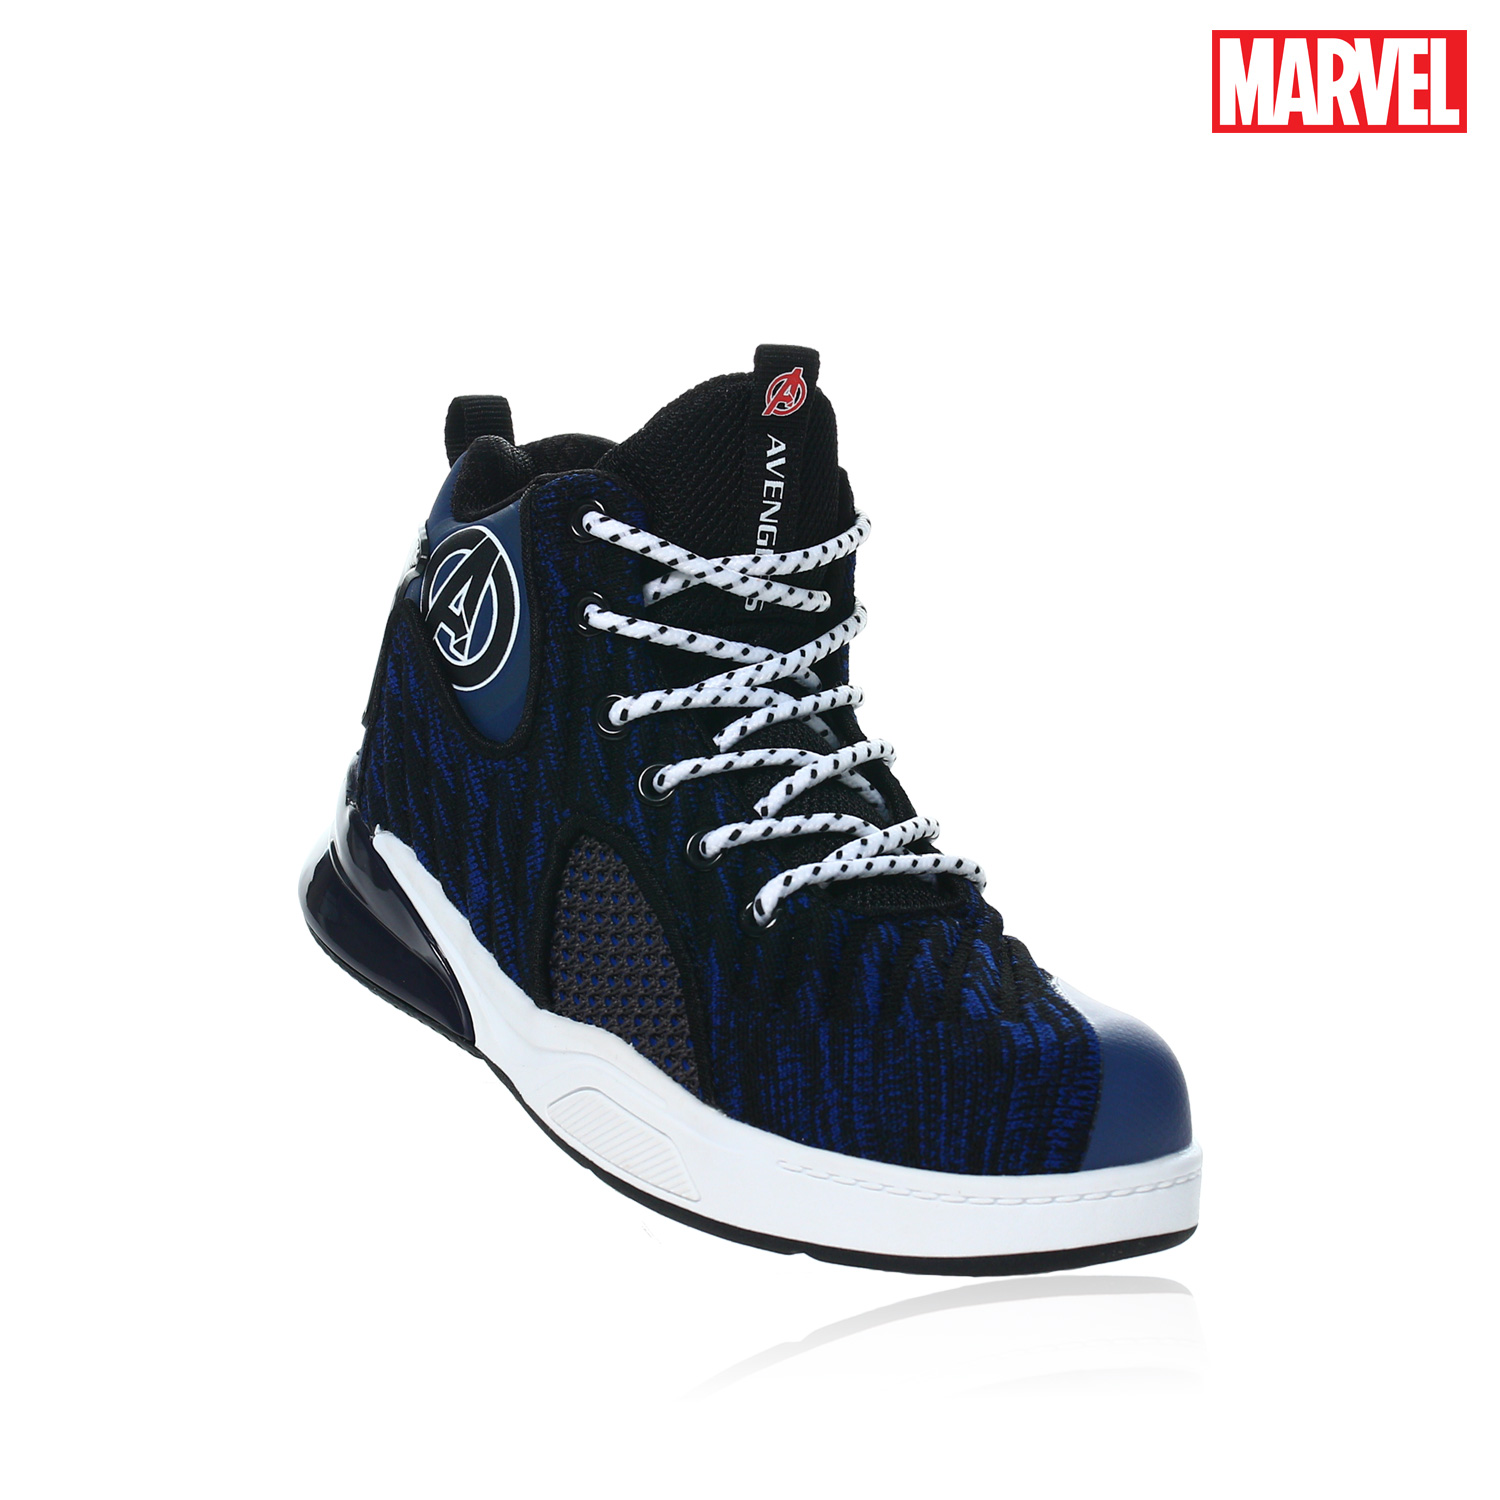 avengers shoes